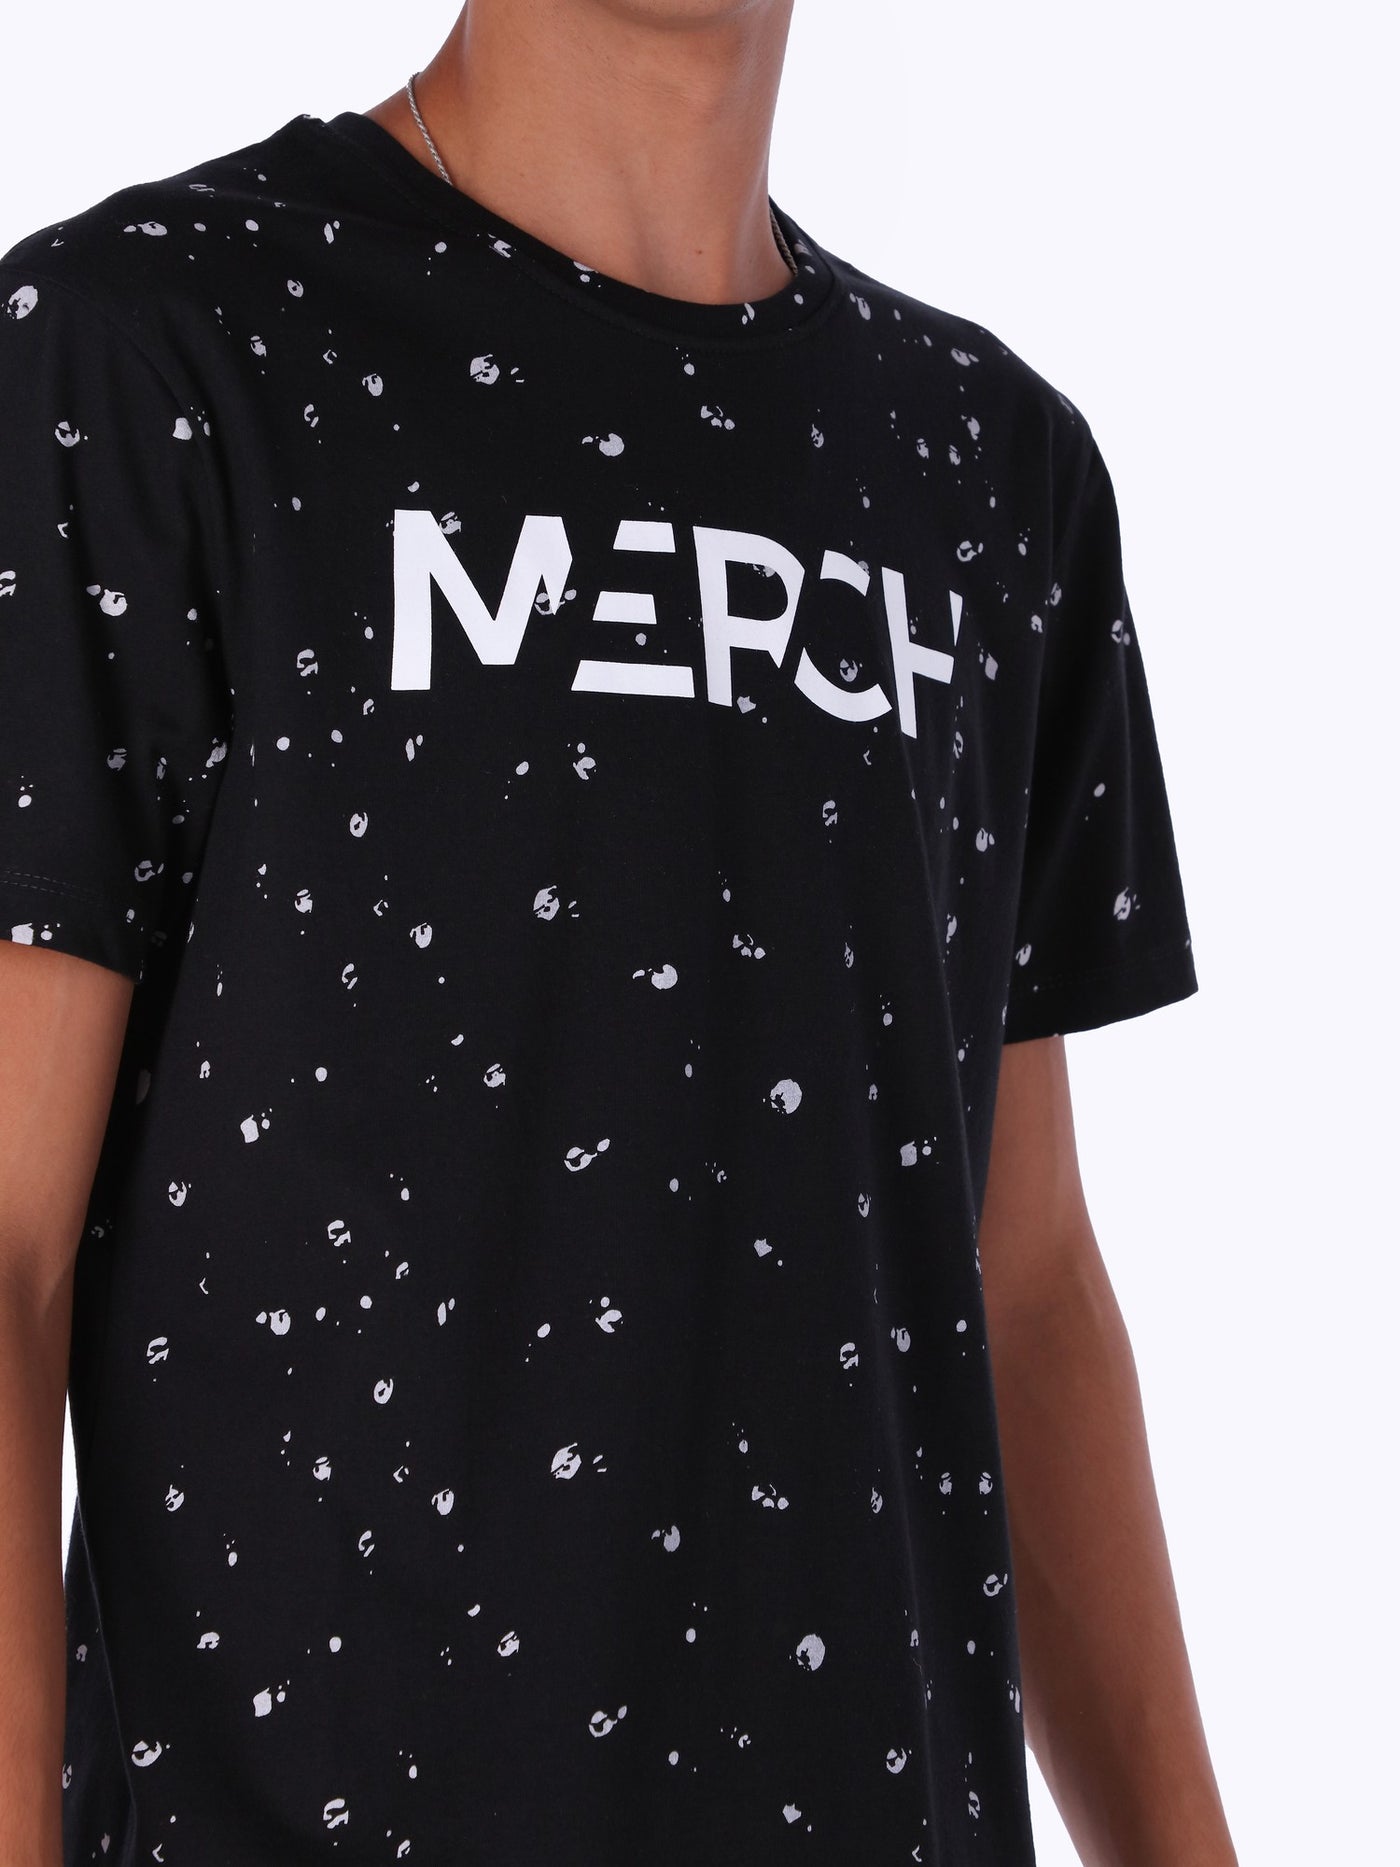 Merch Men's Splatter Effect T-Shirt